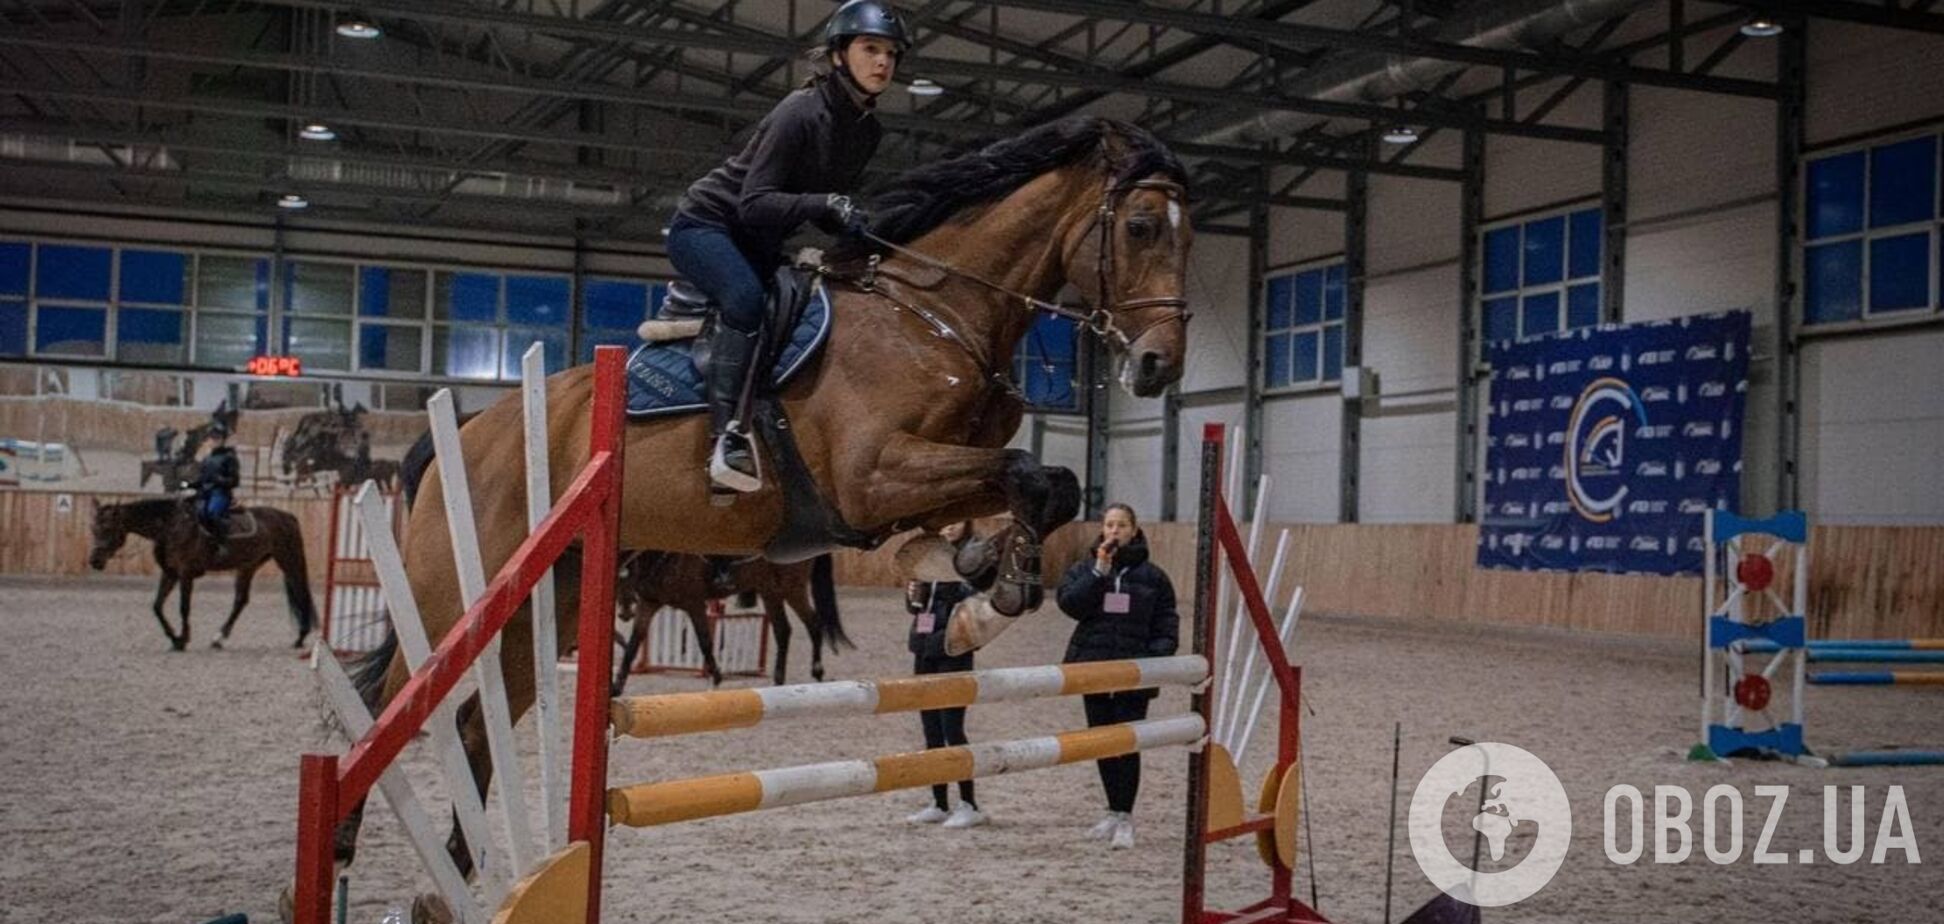 Звезда конного спорта провела мастер-класс в Киеве